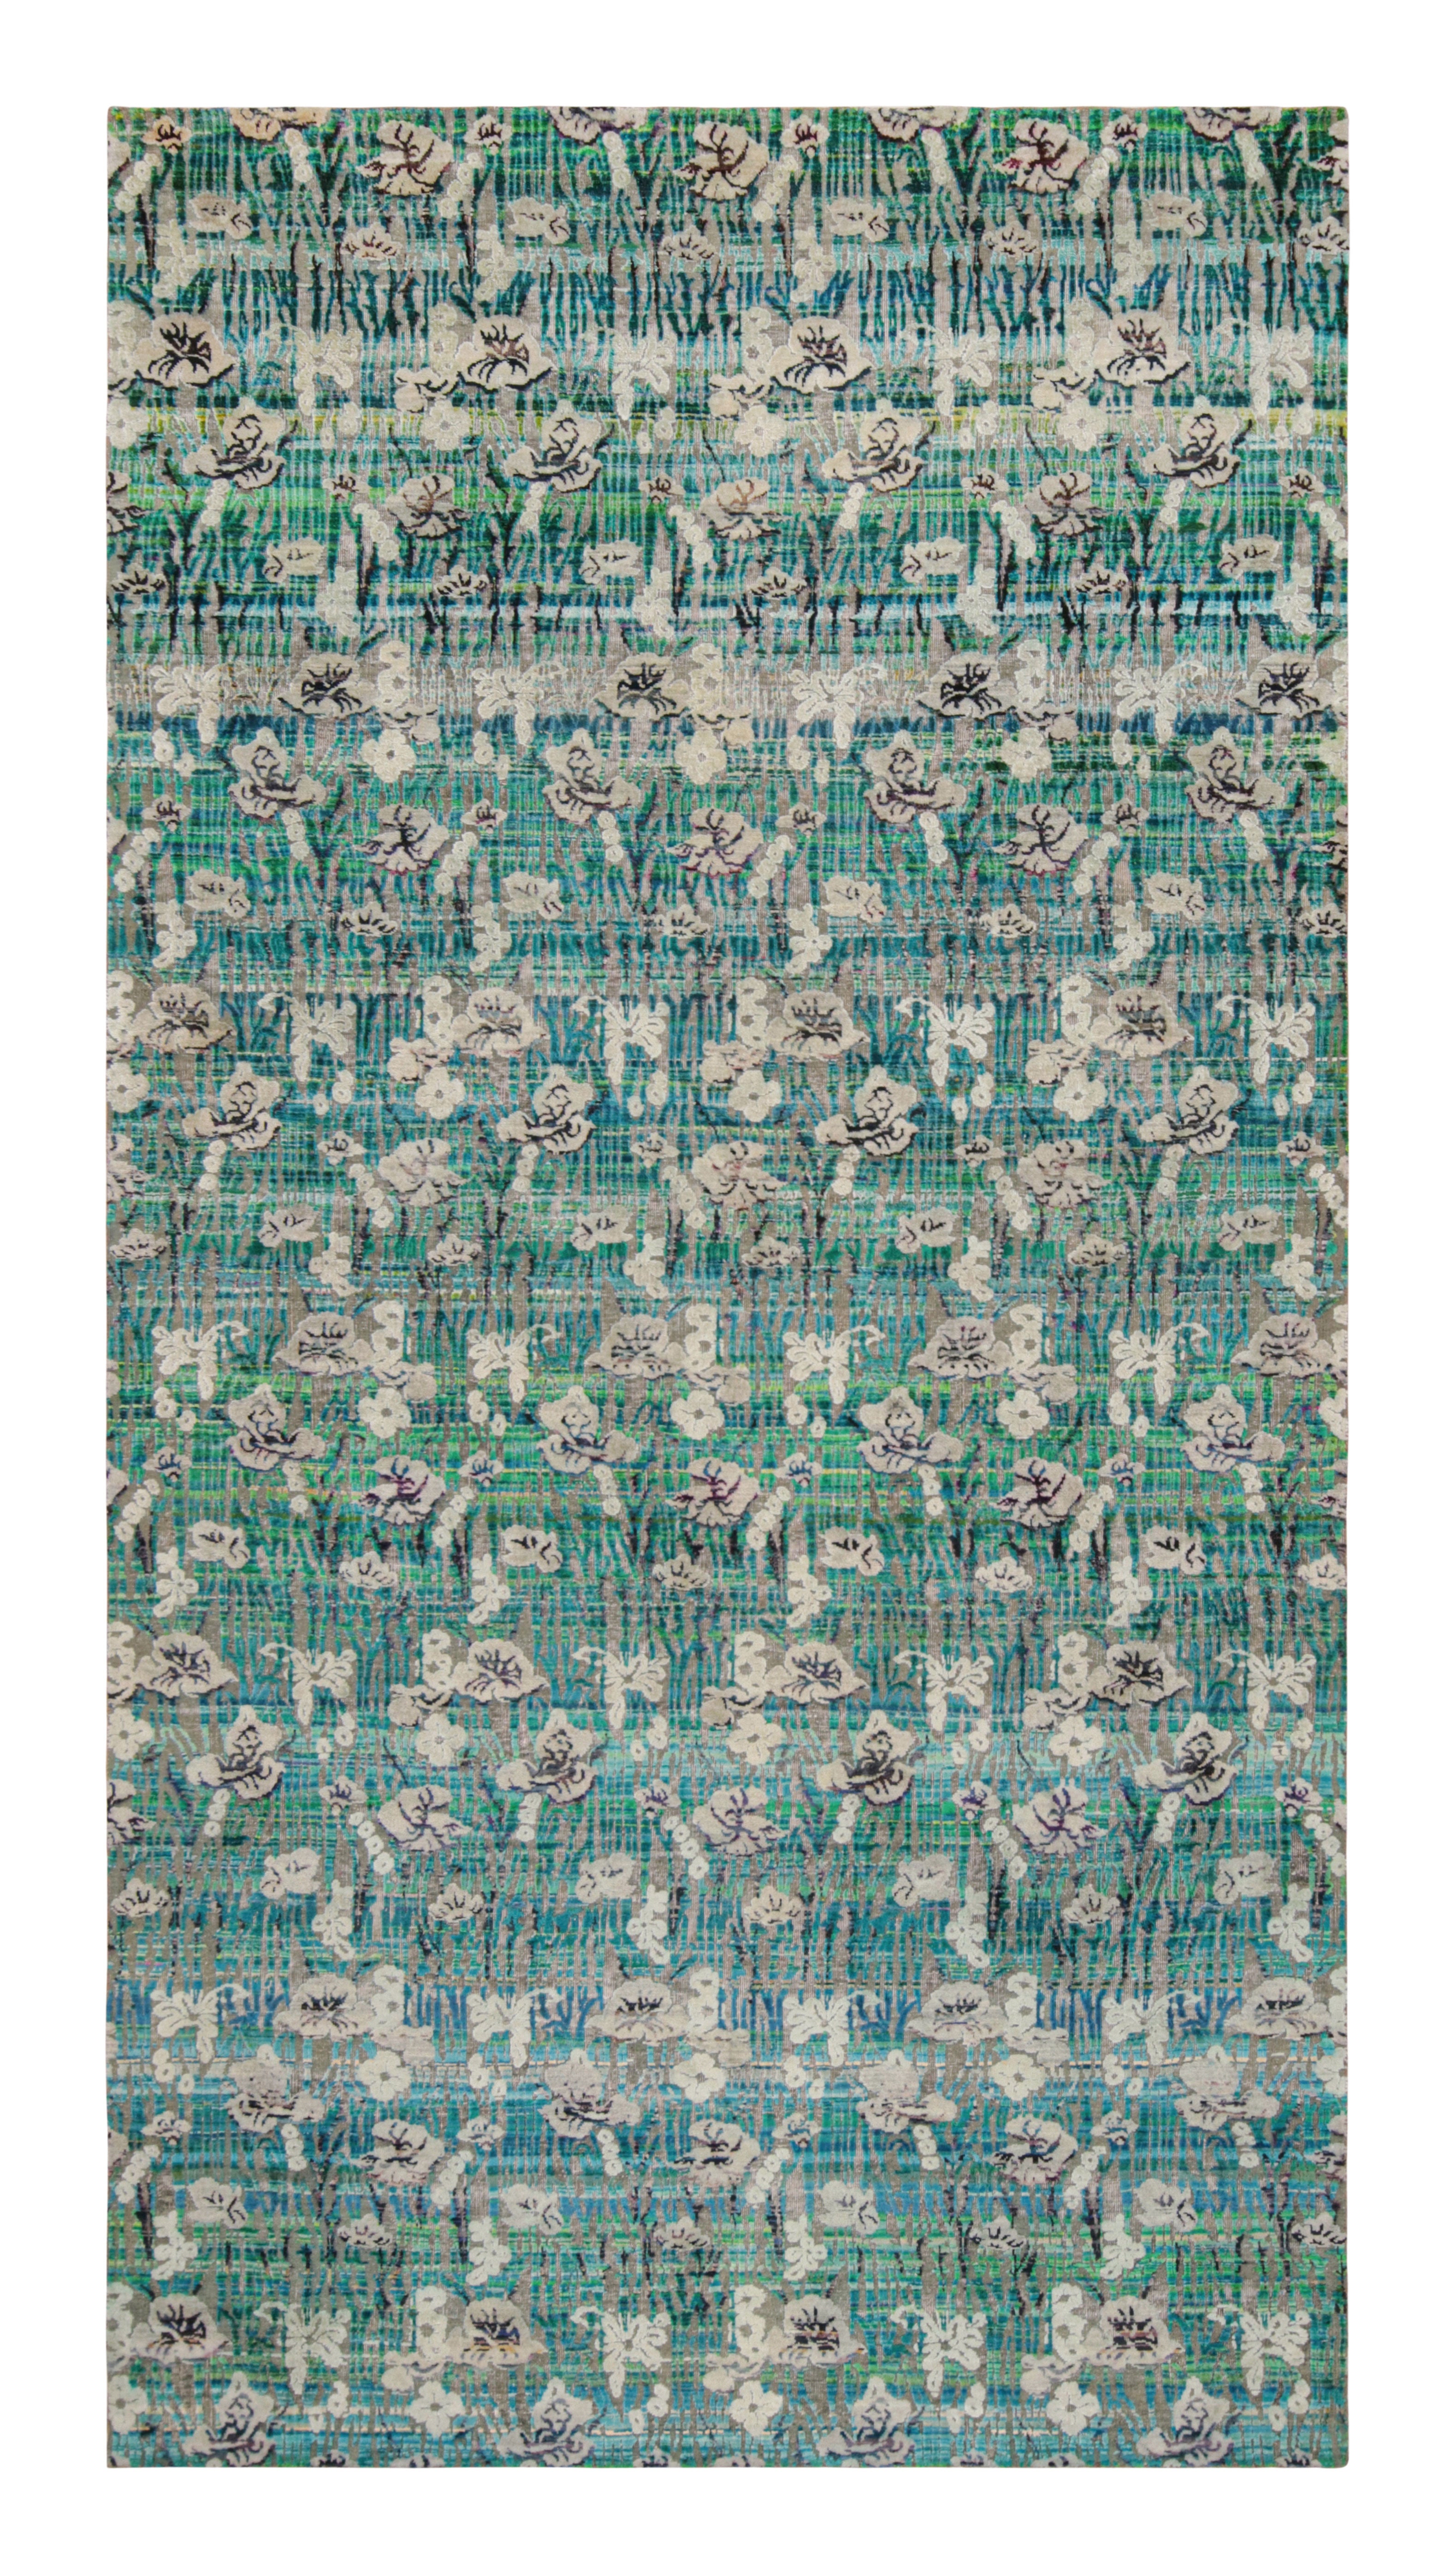 Tapis moderne en soie nouée à la main à motifs floraux vert, bleu et gris de Kilim